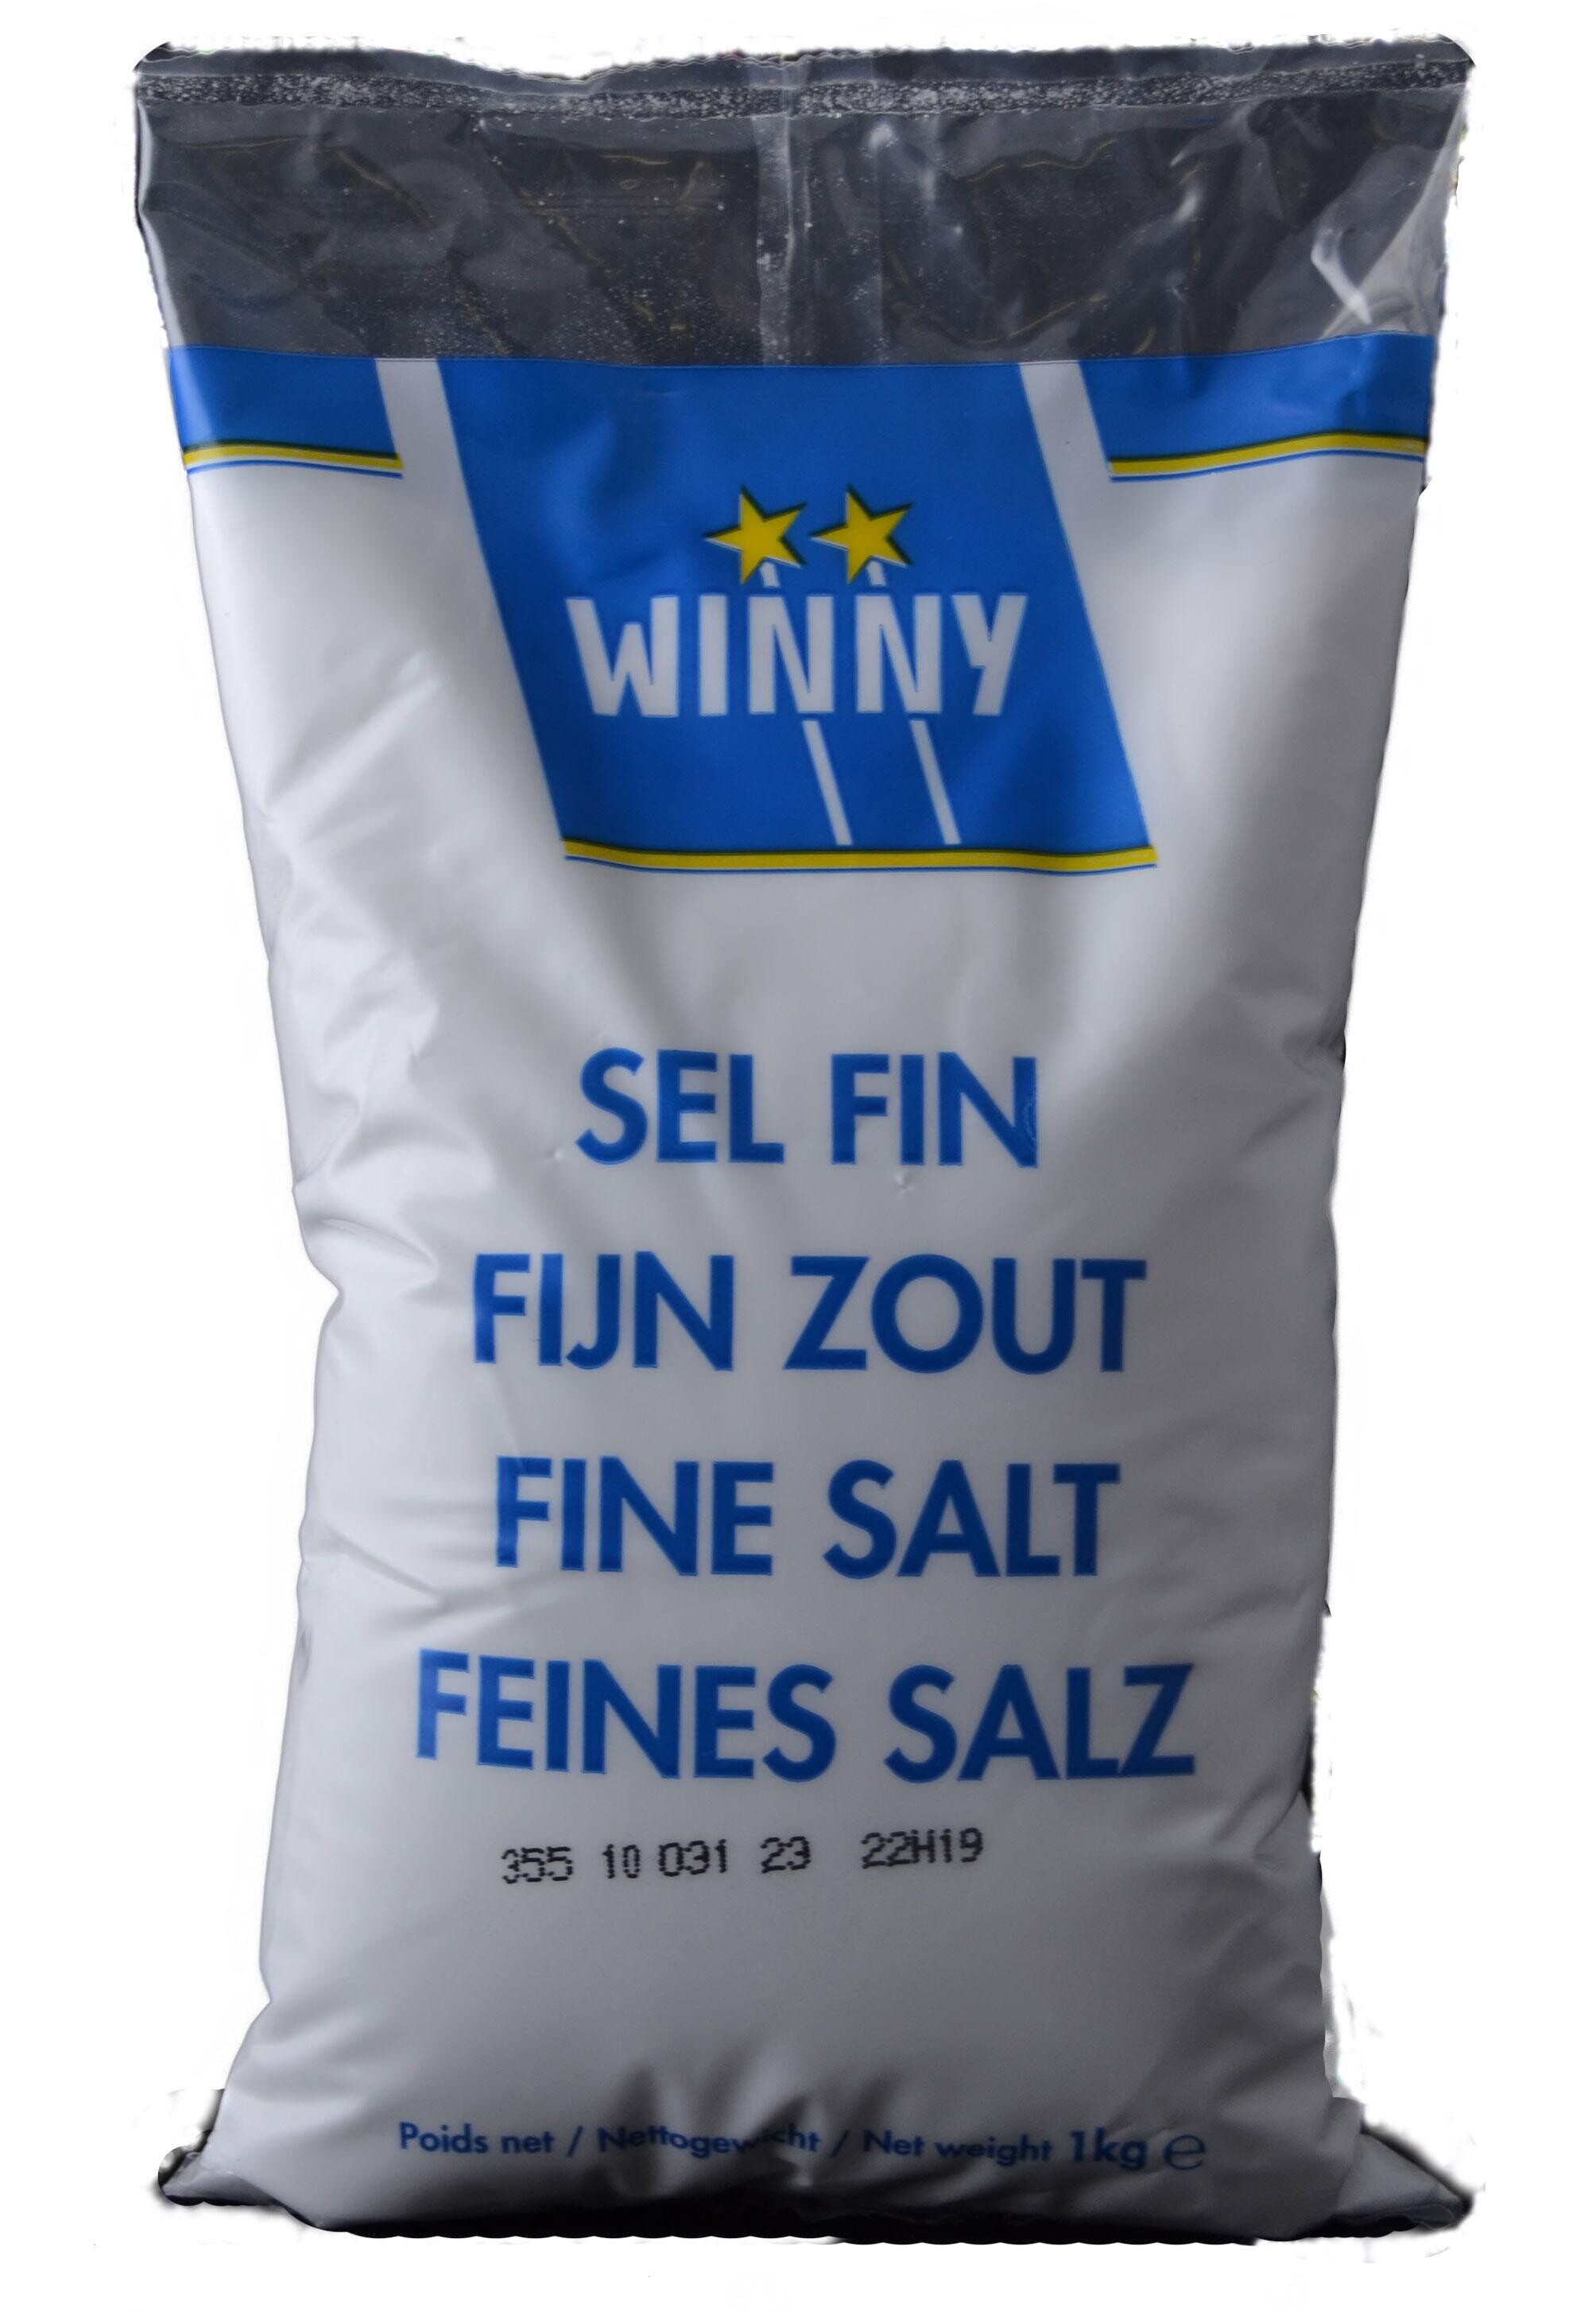 Winny fine salt 1kg